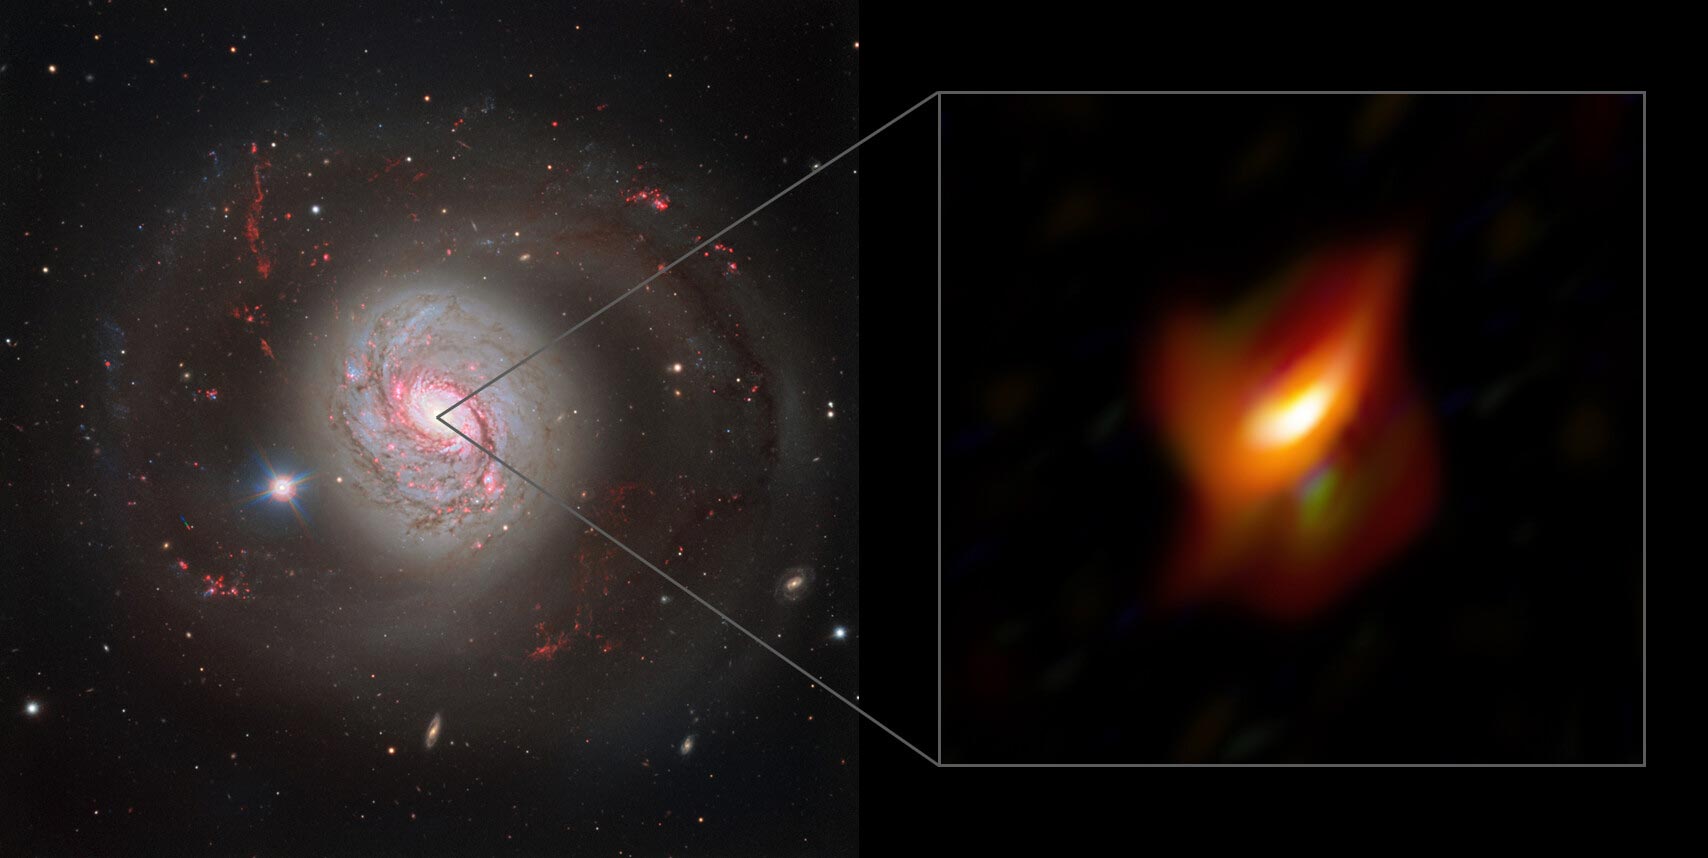 星系NGC1068中心的宇宙尘埃环隐藏着一个超大质量黑洞